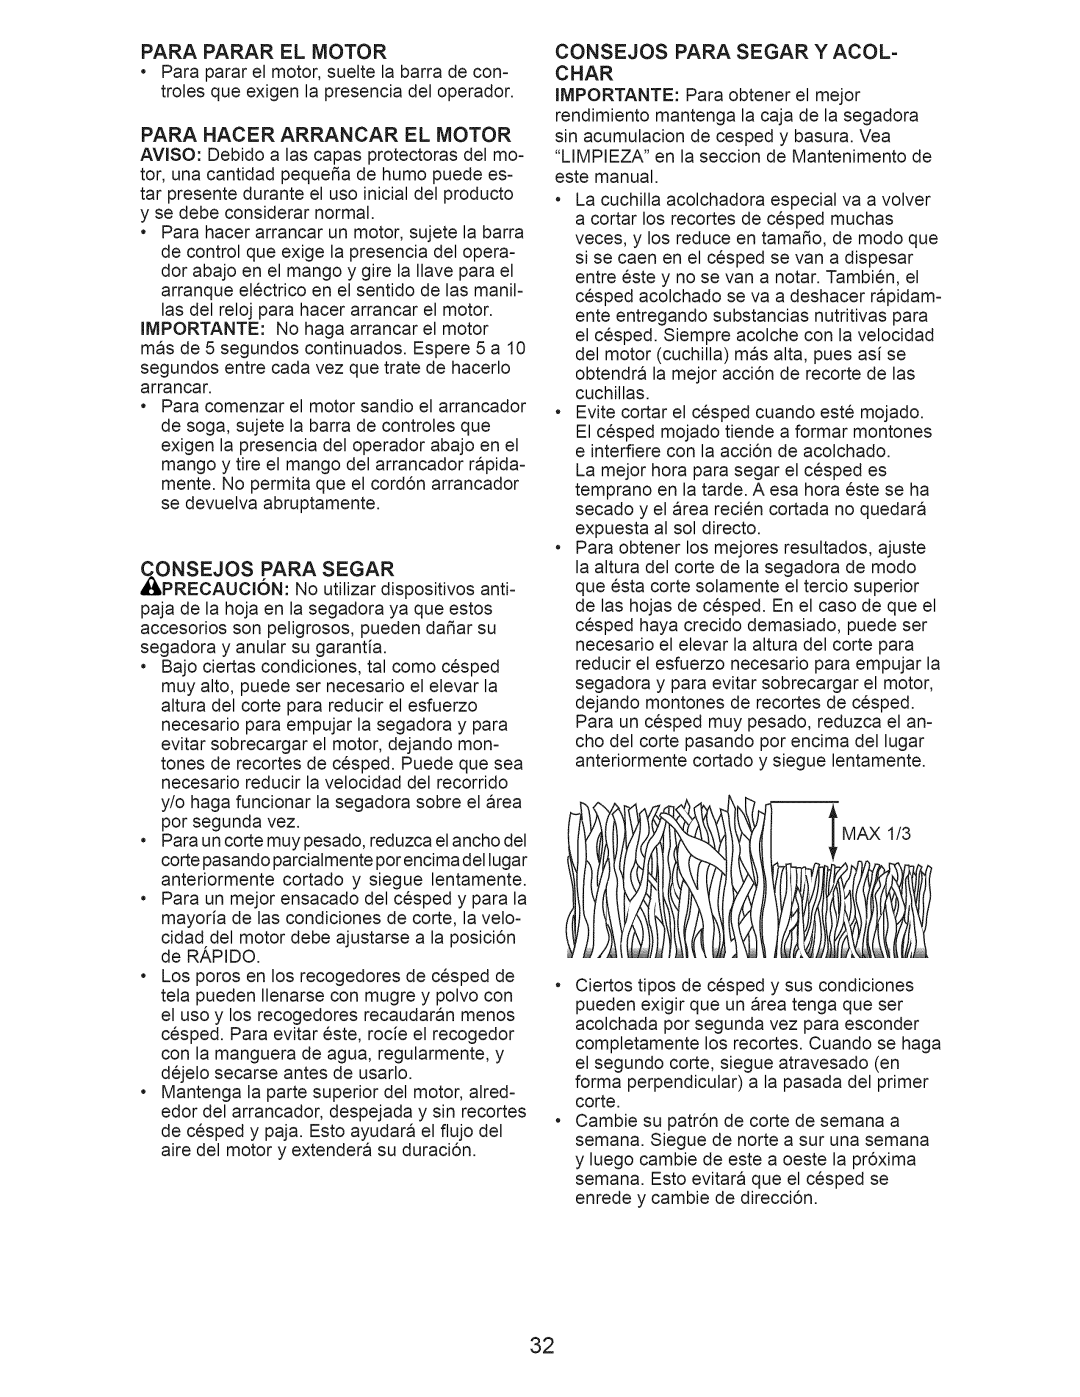 Craftsman 917.374111 manual Para Parar El Motor, Para Hacer Arrancar El Motor, Onsejos Para Segar 